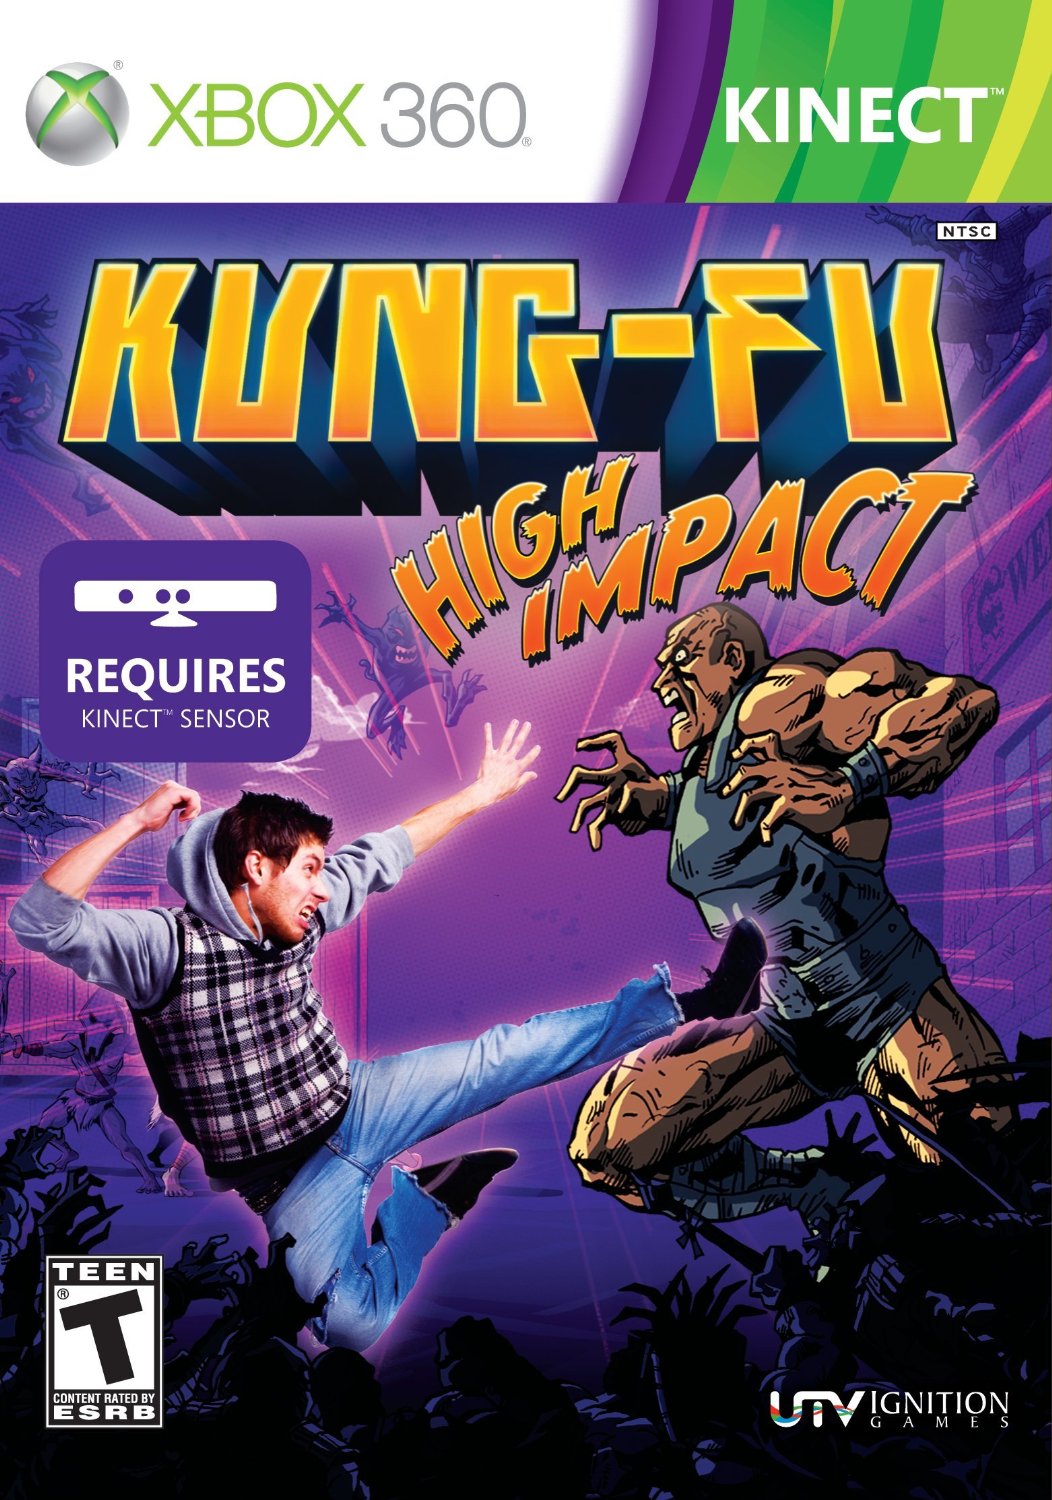 High Resolution Wallpaper | Kung Fu Superstar 1052x1500 px